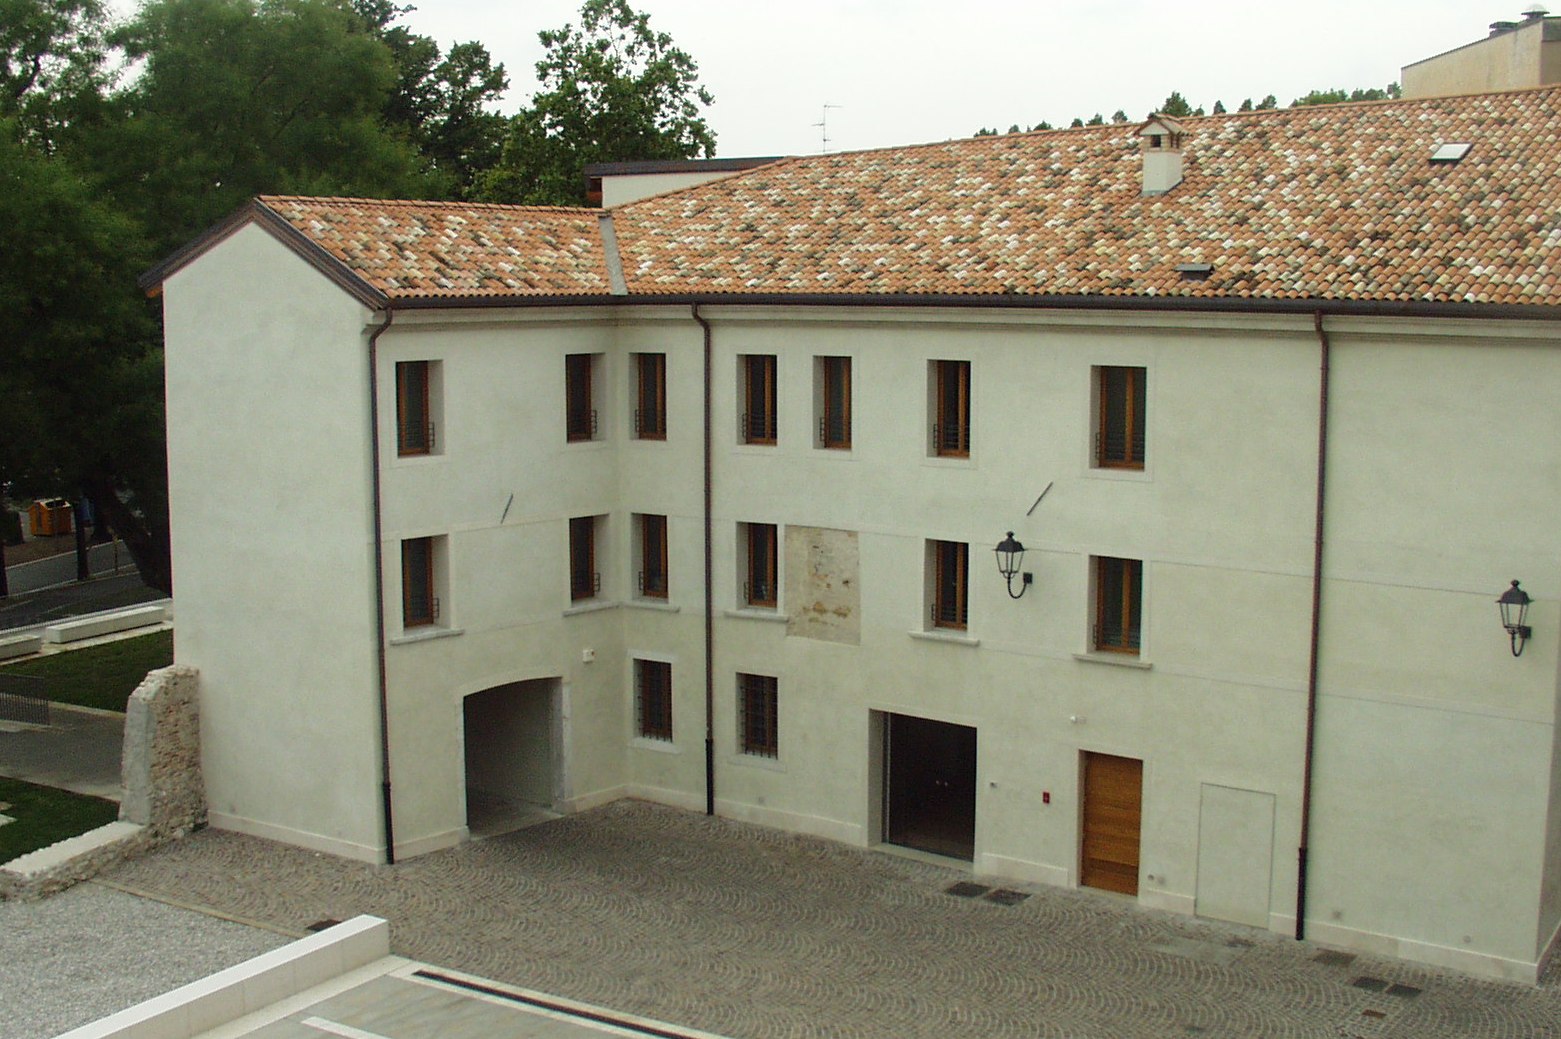 Foto  Palazzo Crimini Sede dei Servizi Sociali